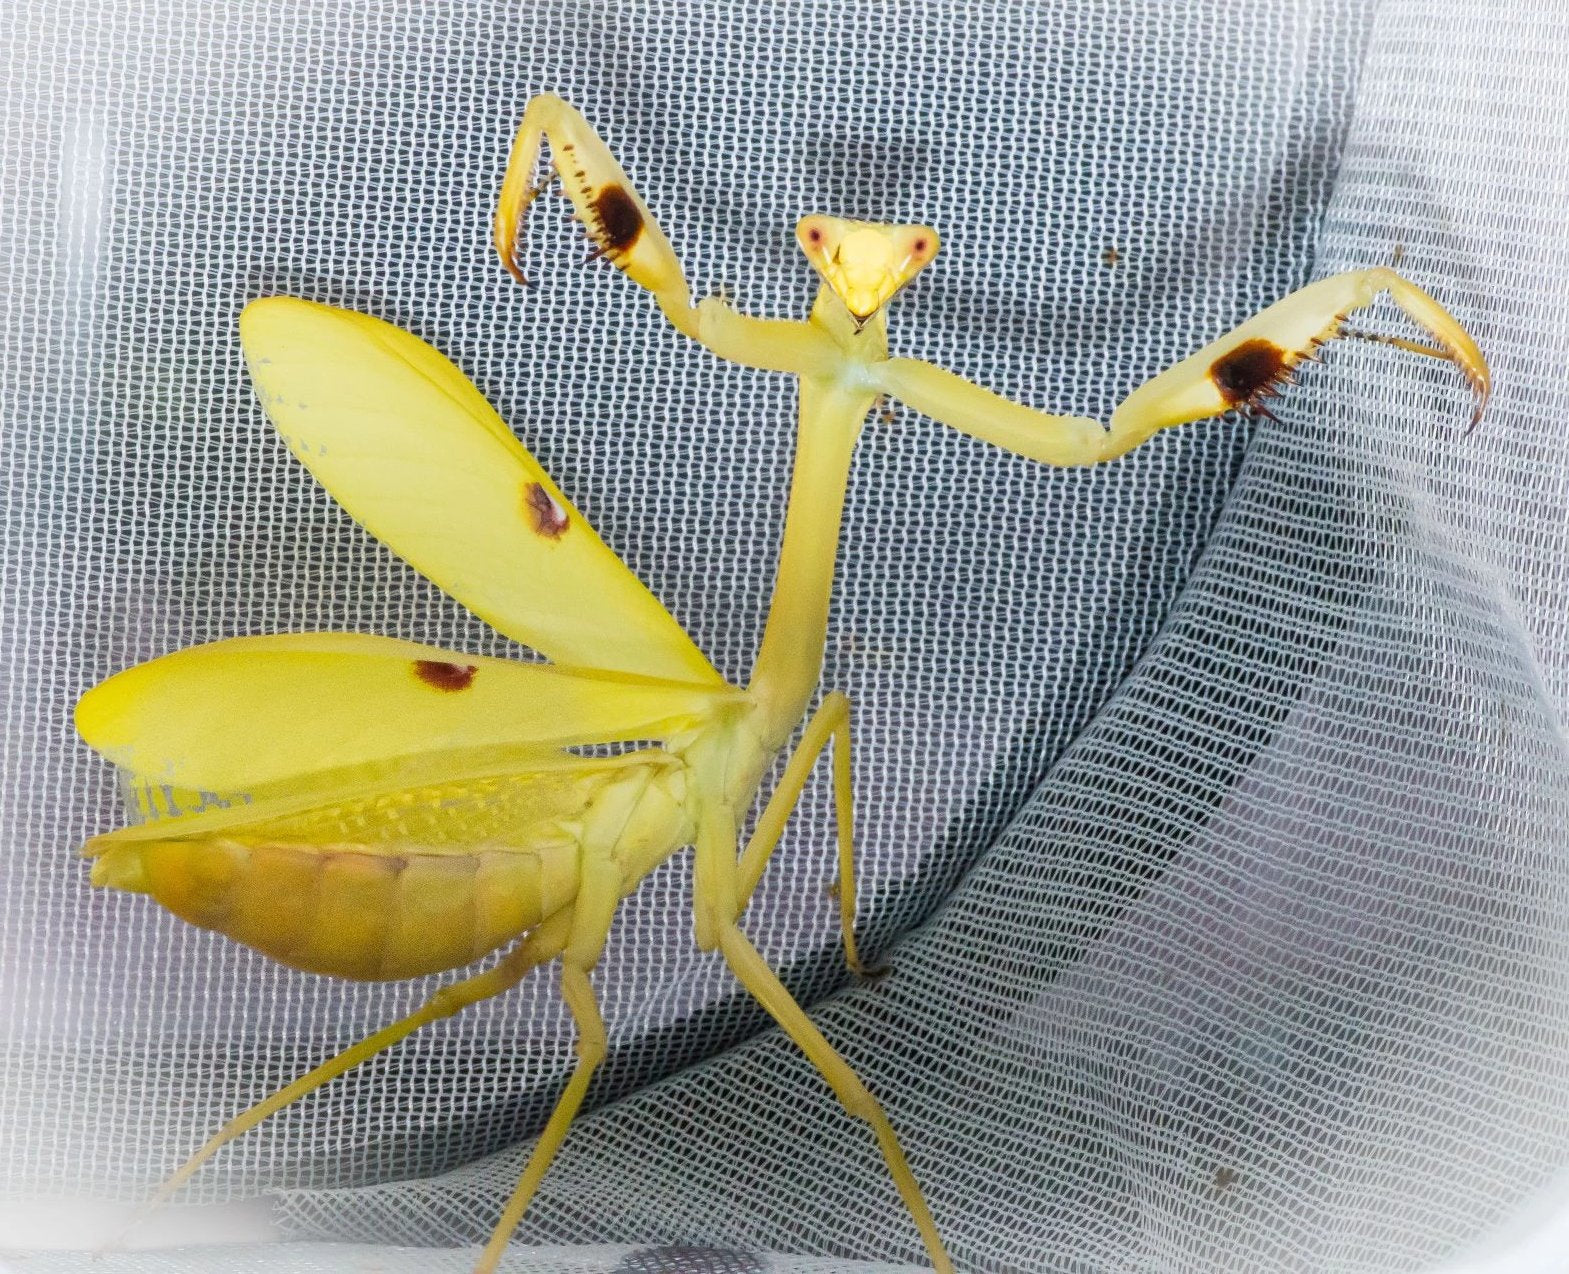 Mantis estagmatoptera femoralis